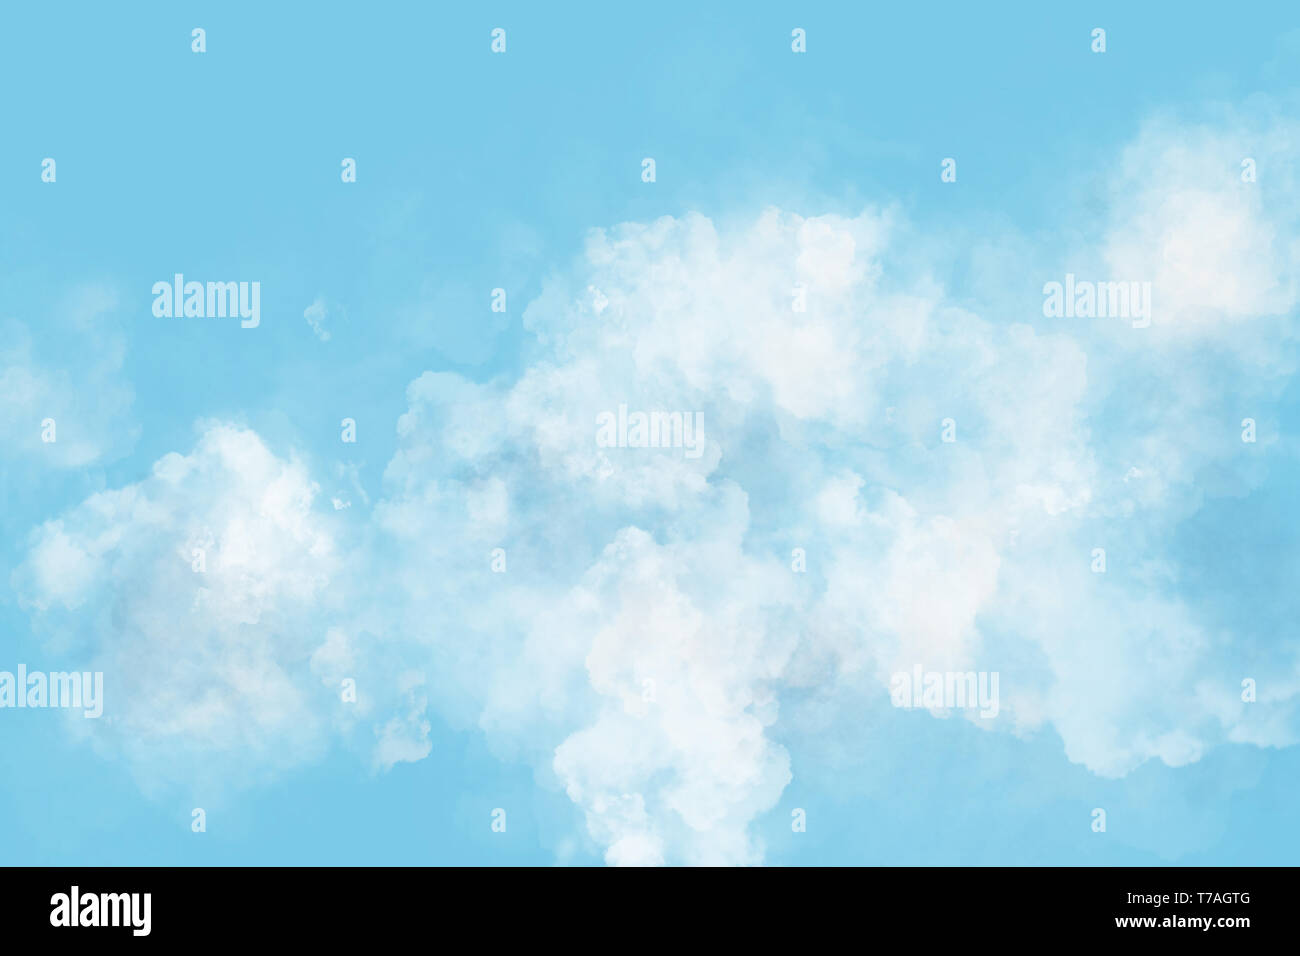 Fond ensoleillé, ciel bleu avec des nuages blancs.Illustration Banque D'Images